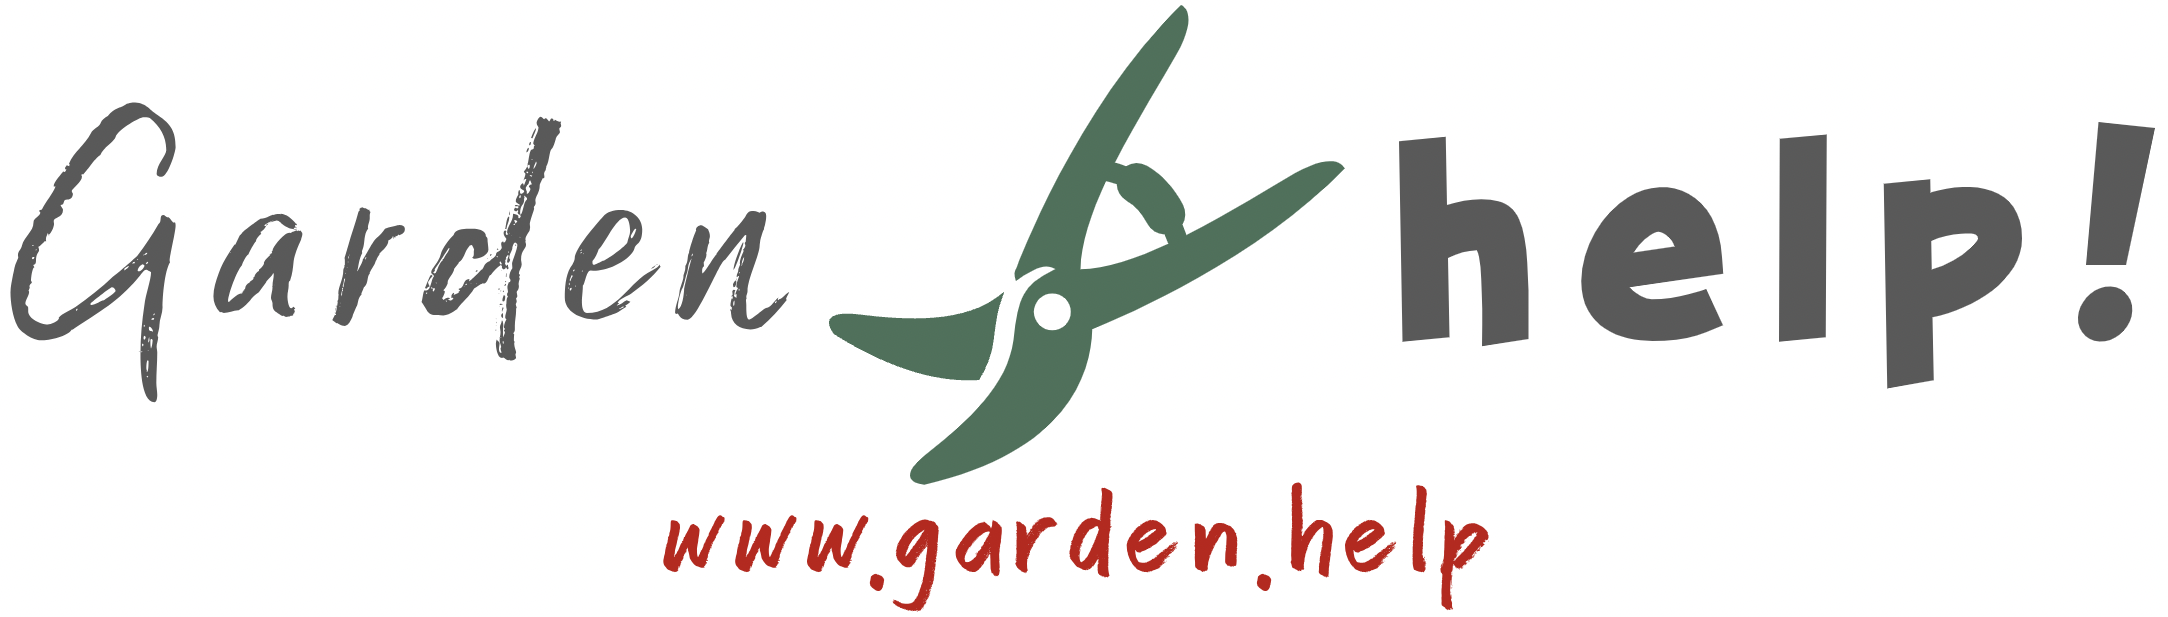 Garden.Help Logo Graphic